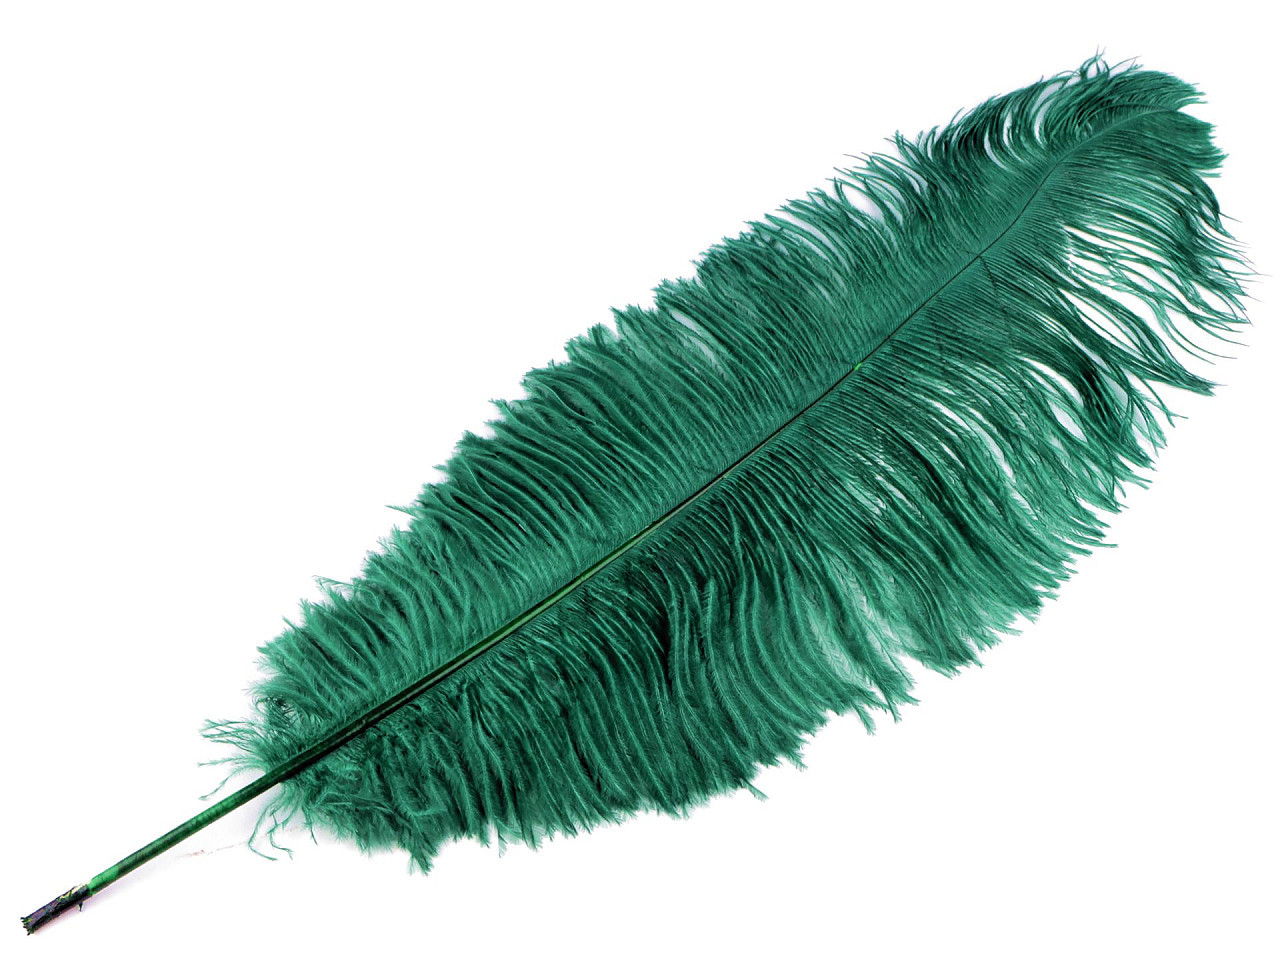 Pštrosí peří délka 60 cm, barva 16 zelená tmavá